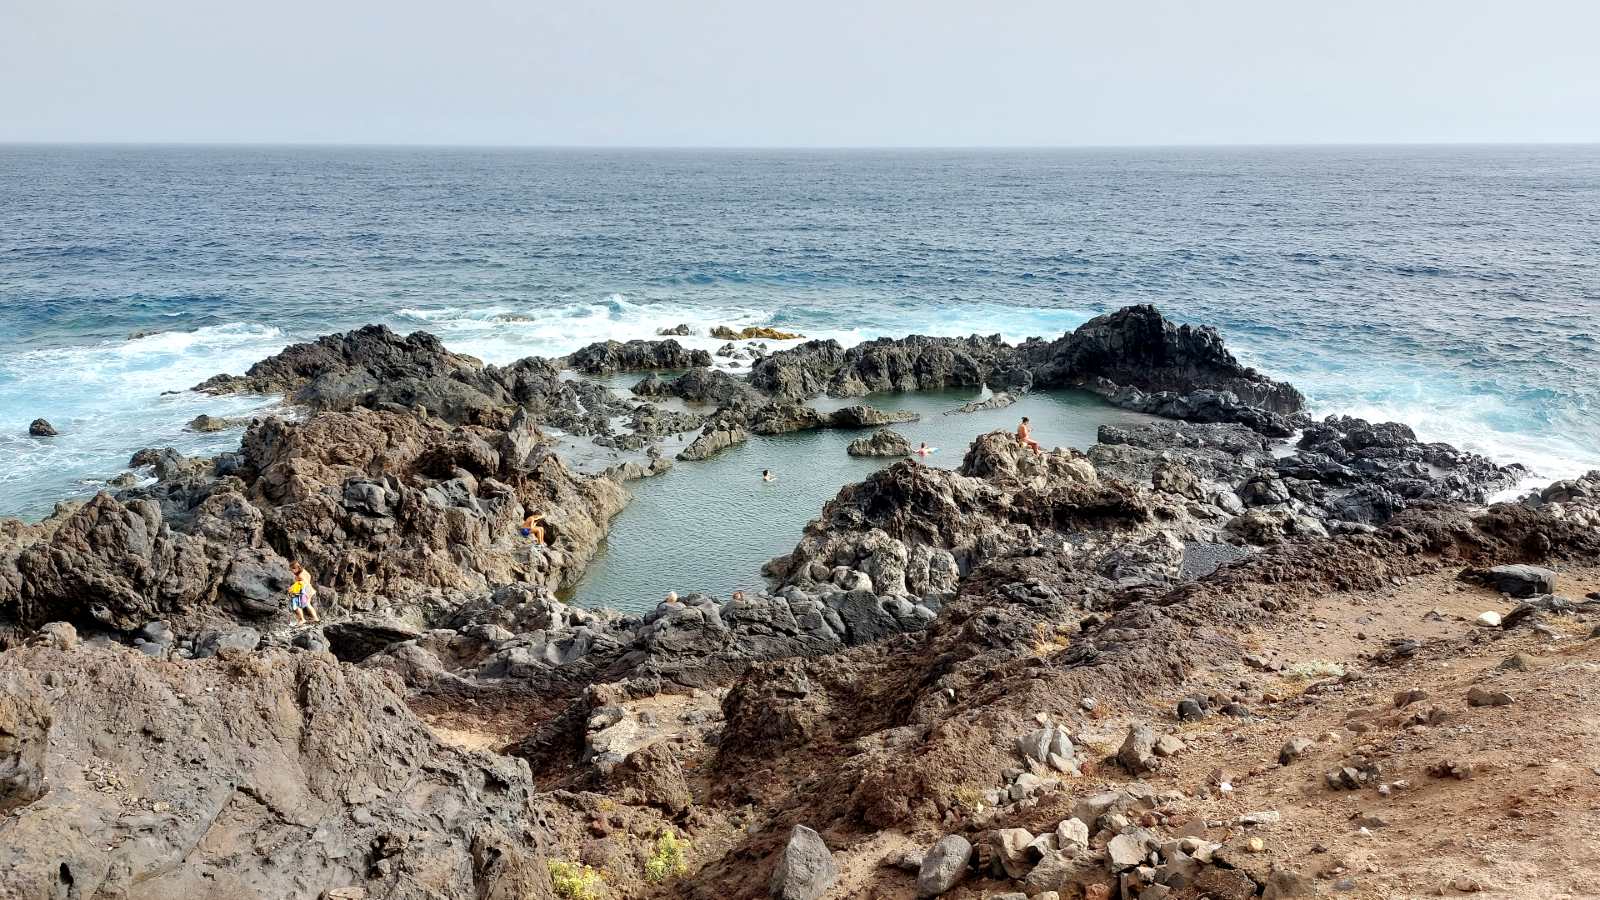 Las piscinas naturales del norte de Tenerife son originales zonas de baño creadas por las coladas de lava que desembocan en el mar